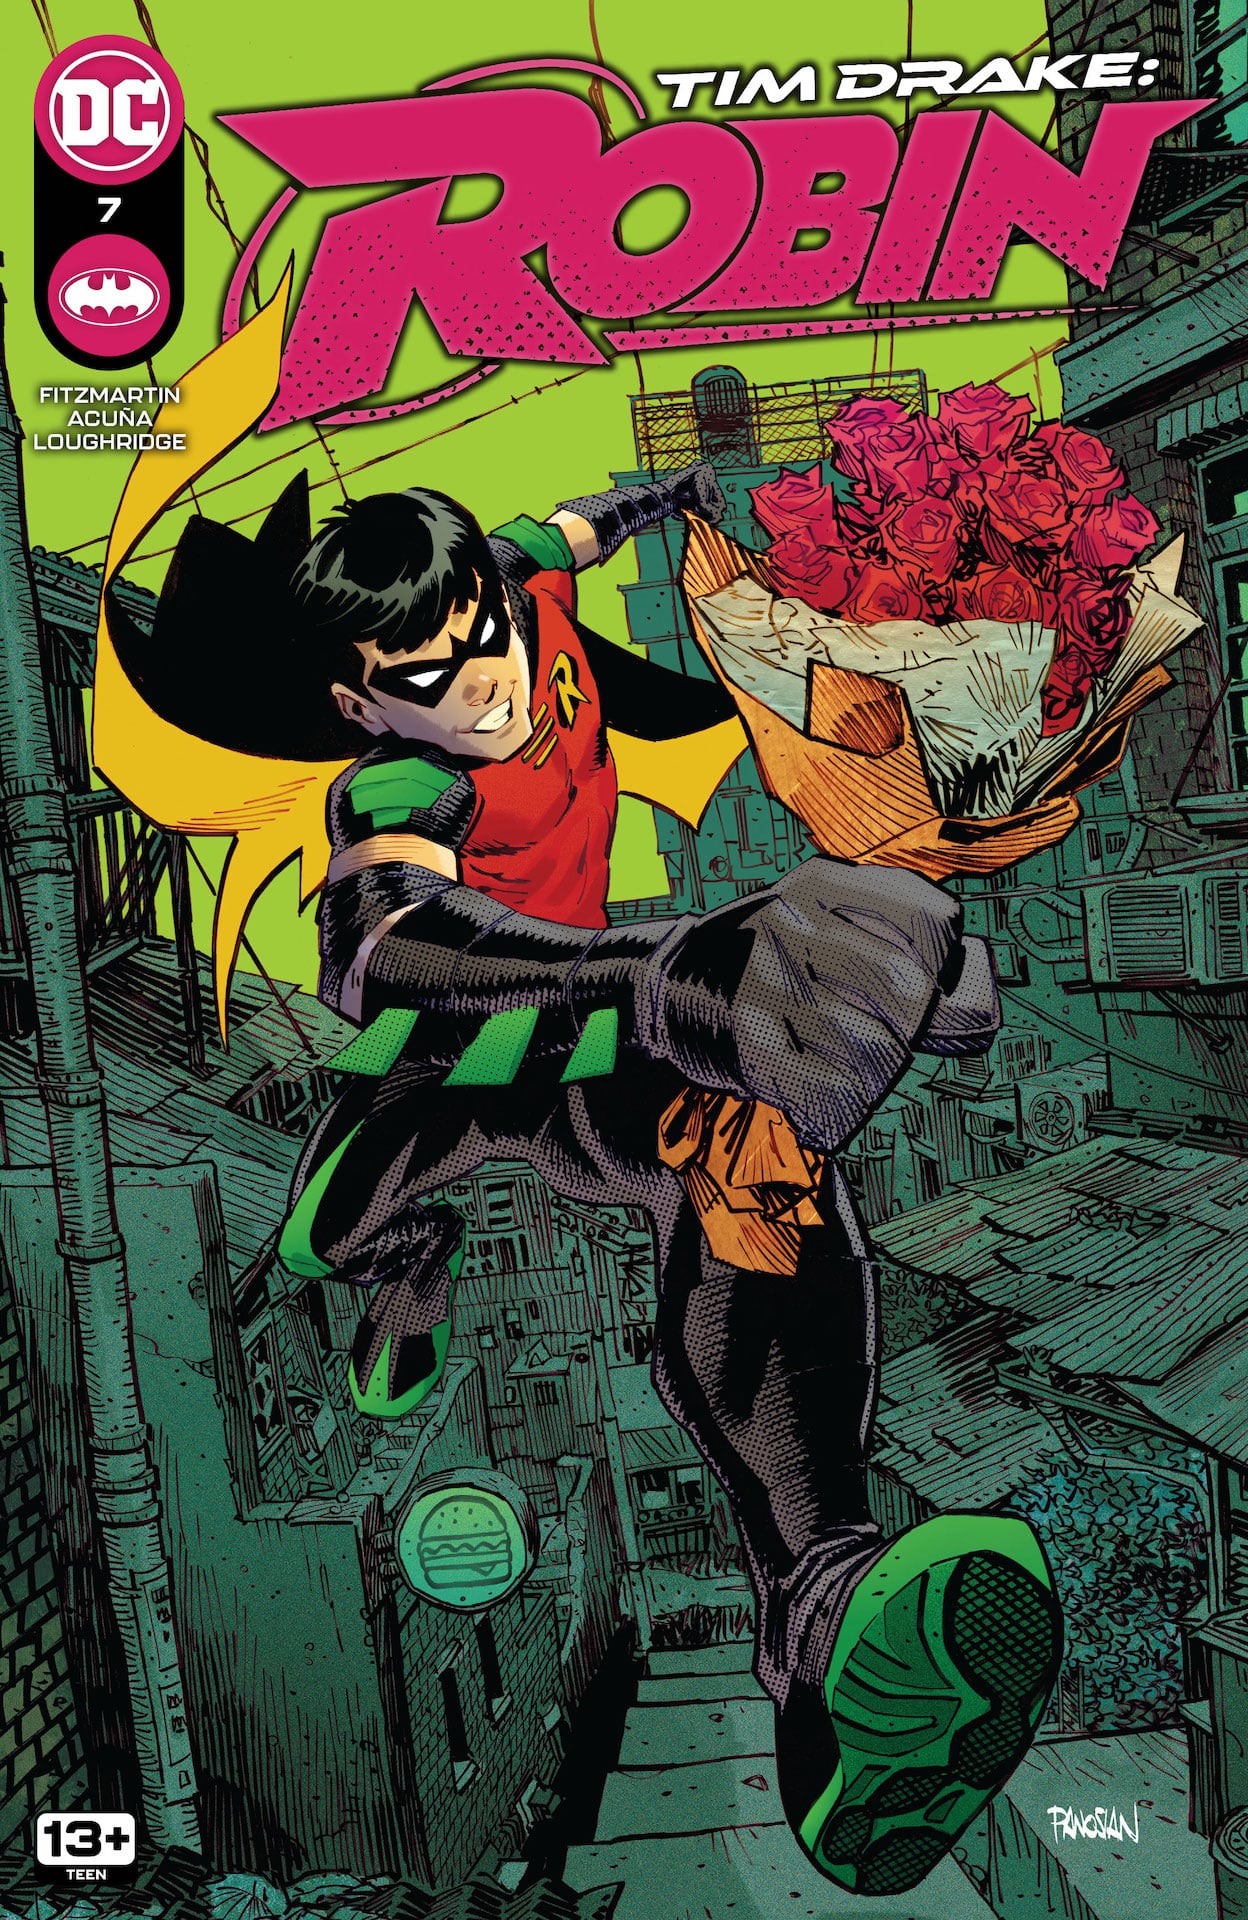 DC Preview: Tim Drake: Robin #7